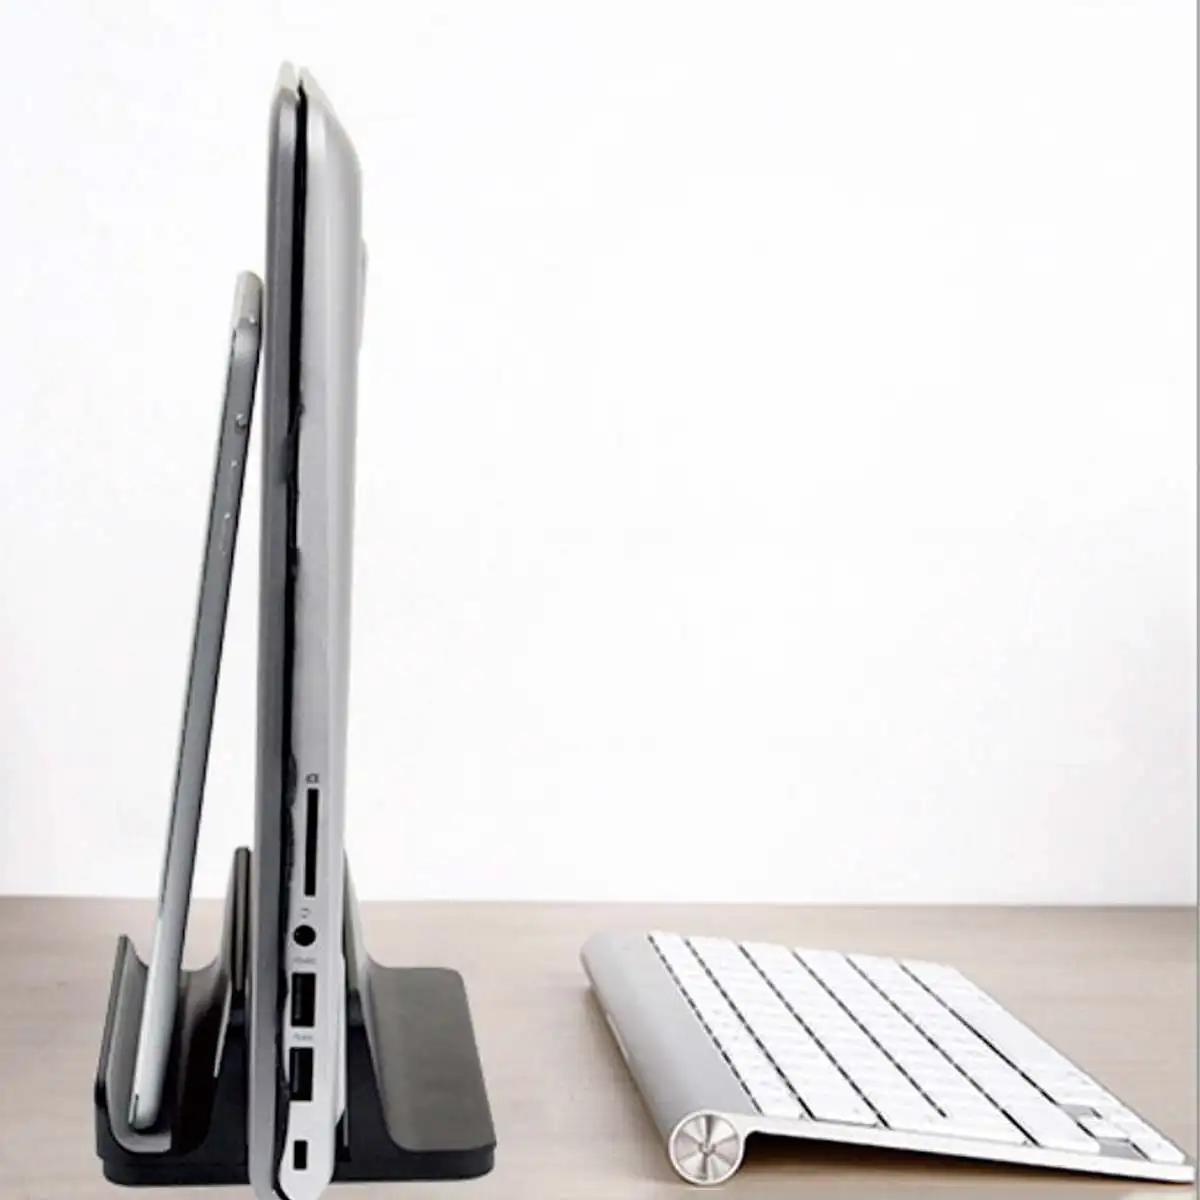 Вертикальная подставка для ноутбука Macbook Air Pro 13 15 настольная алюминиевая подставка с регулируемым размером док-станции для поверхности Chromebook